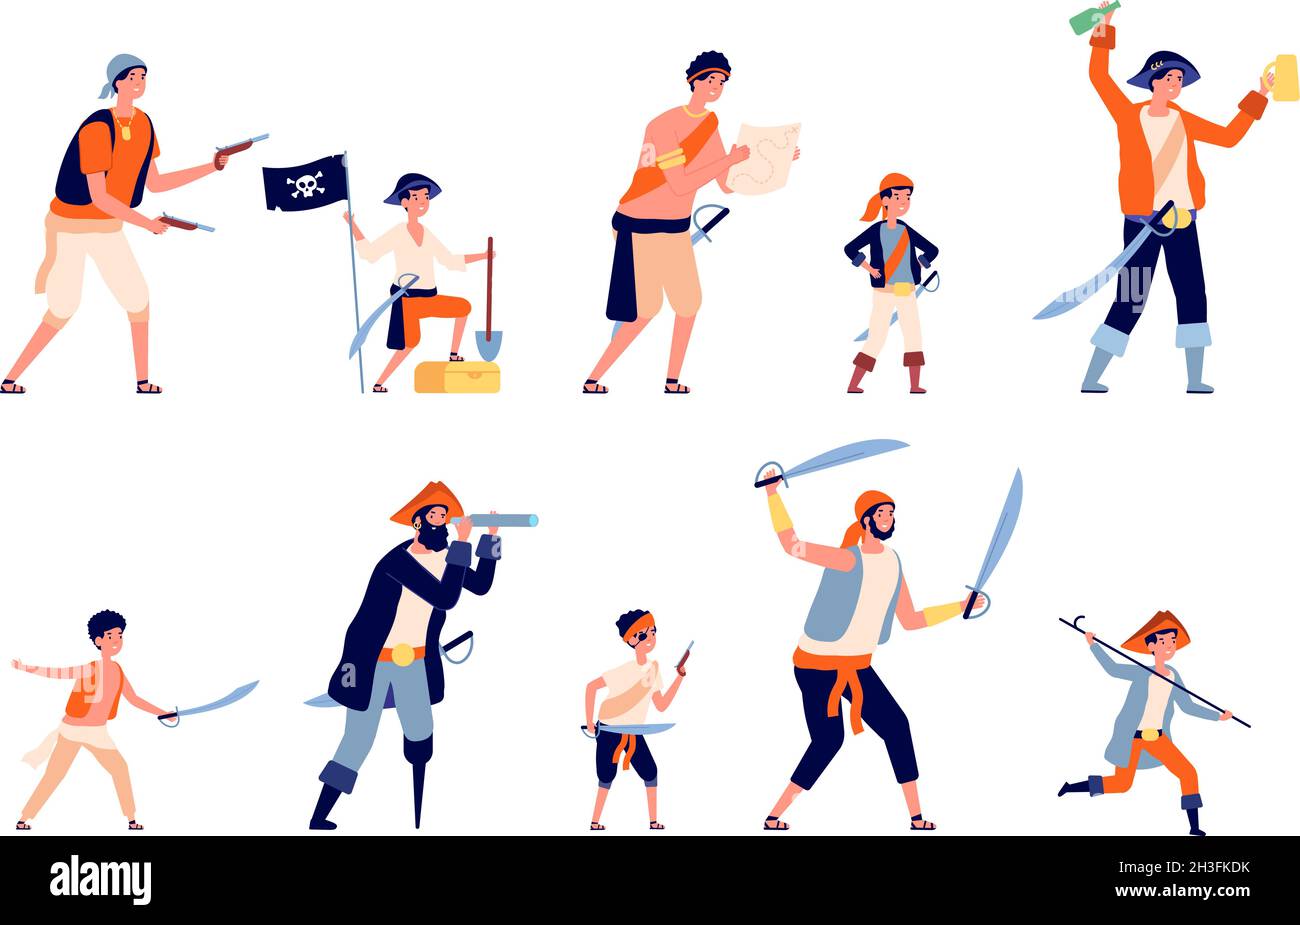 Piraten-Figuren. Cartoon Pirat, marine Räuber Männer und Jungen. Ocean Traveller Charaktere, kindische Person mit Schatz und Karte Utter Vektor-Set Stock Vektor